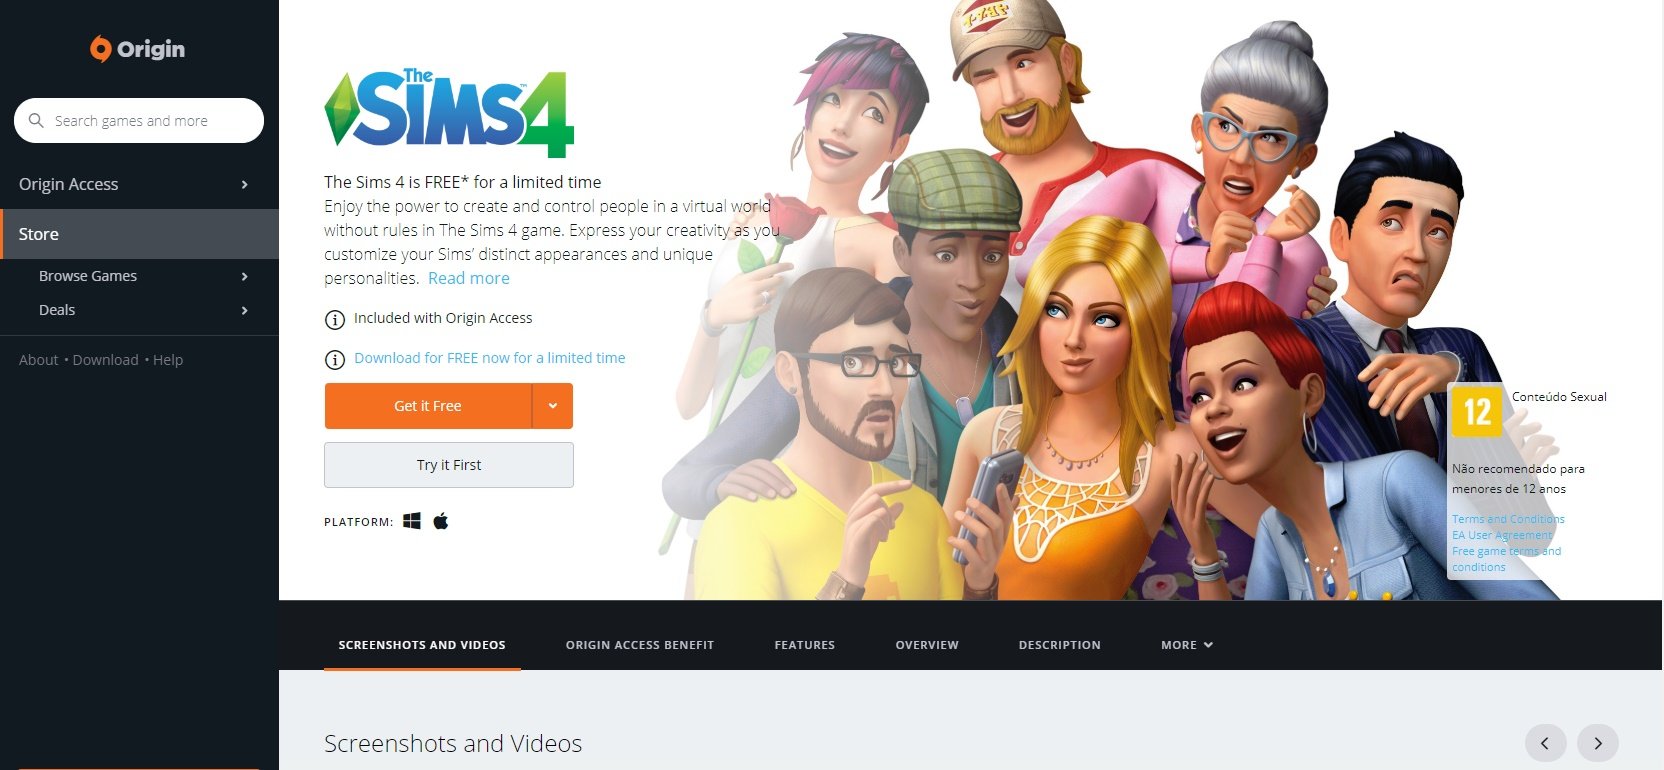 The Sims 4 de graça: veja o que muda e requisitos do game para PC